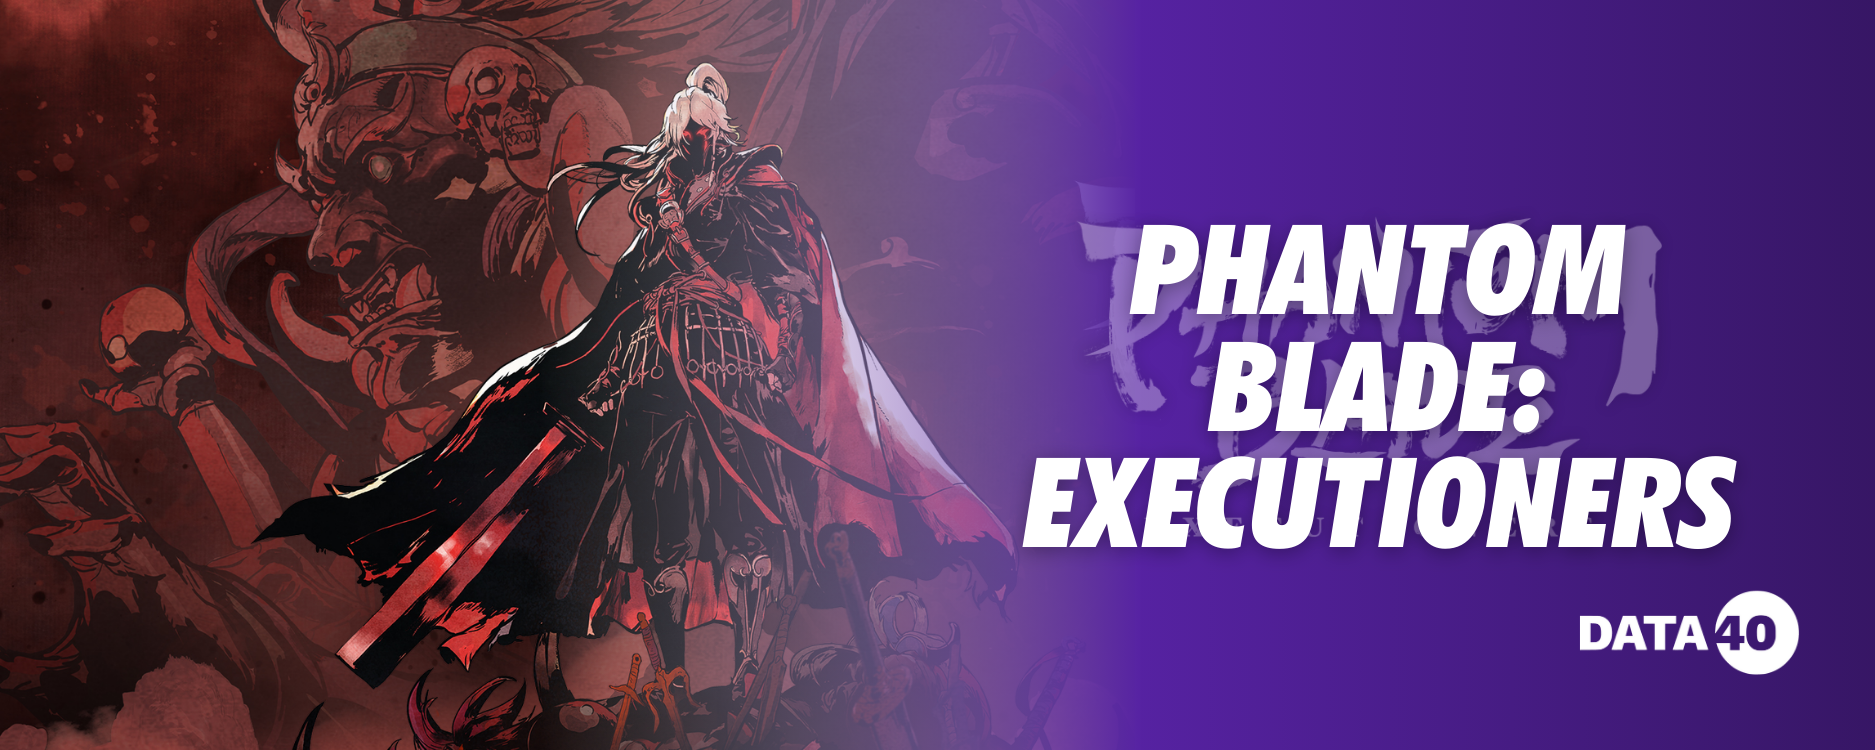 Phantom Blade Executioners